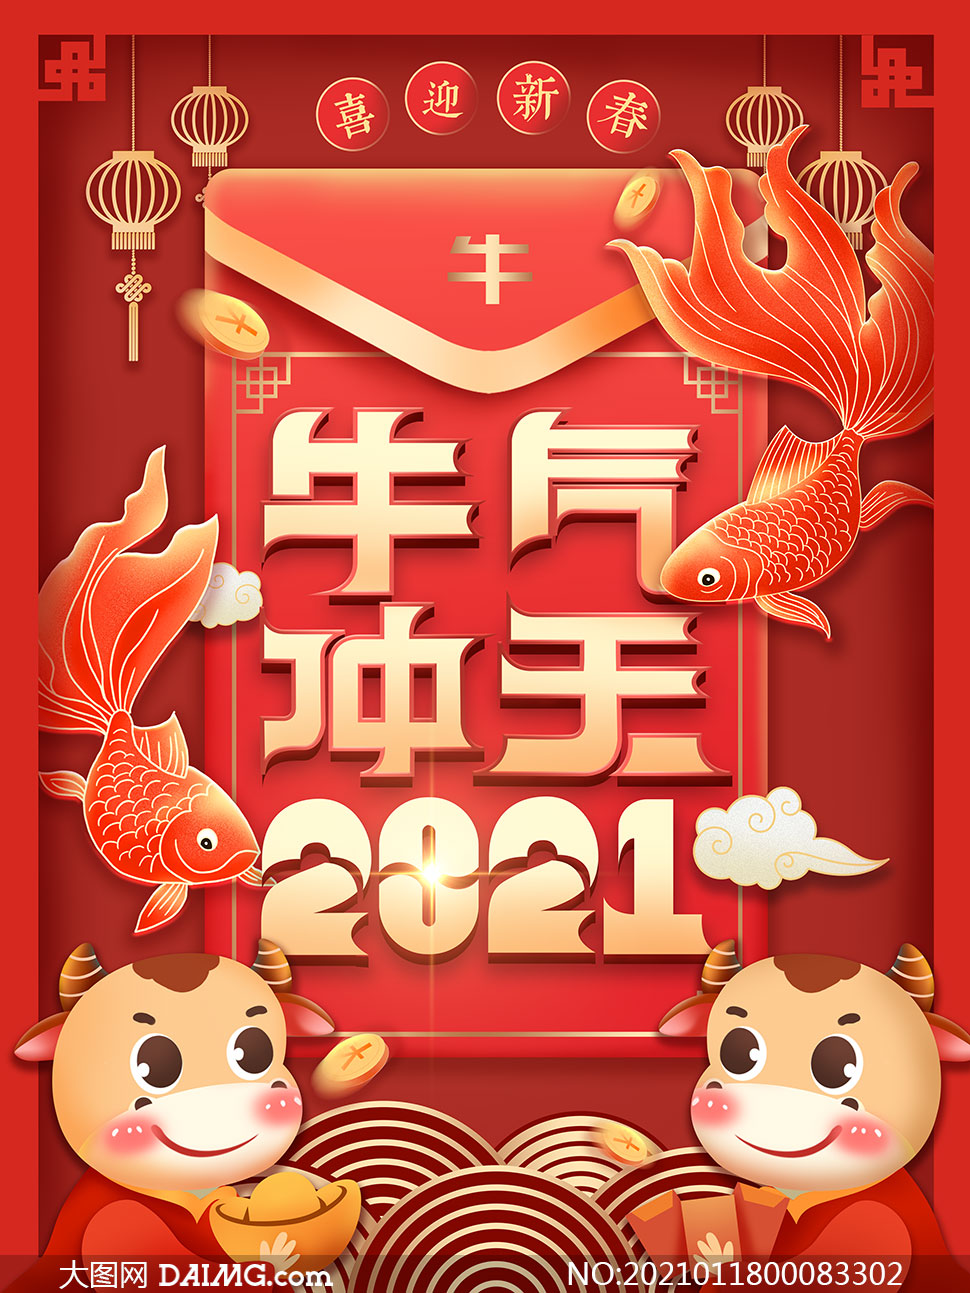 2021牛年创意喜庆海报设计psd源文件